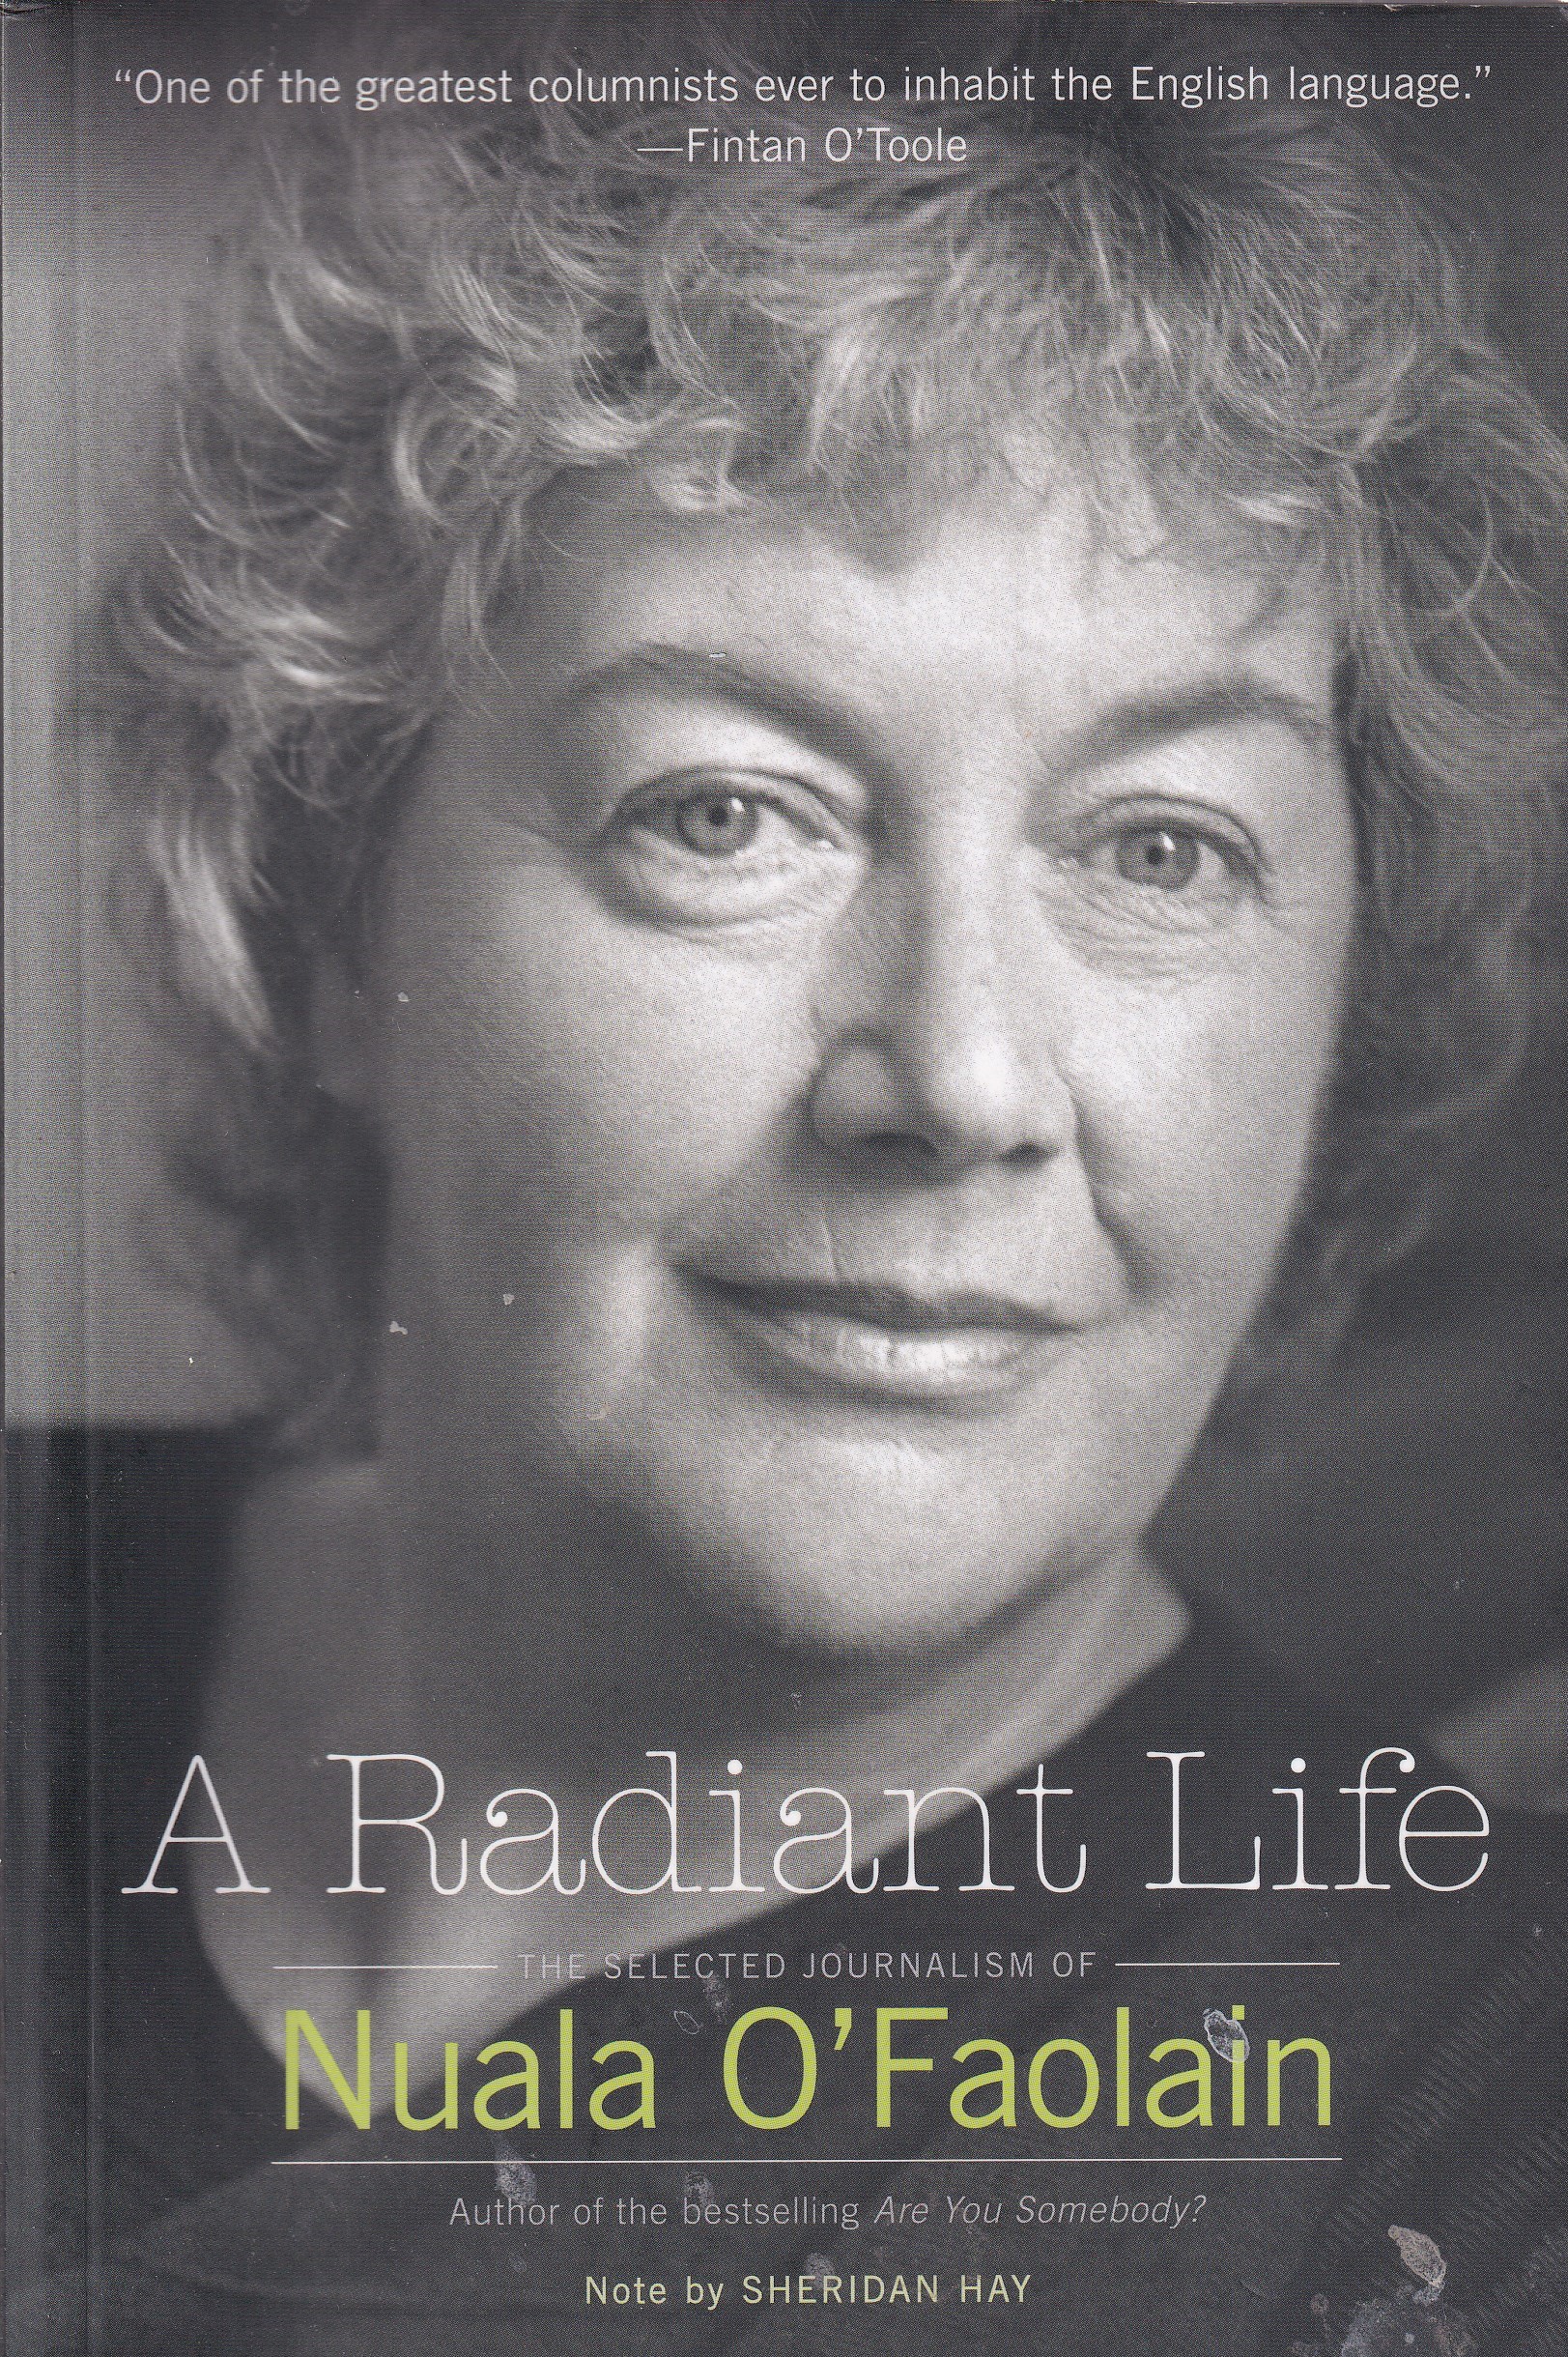 A Radiant Life: The Selected Journalism of Nuala O’Faolain by Nuala O'Faolain